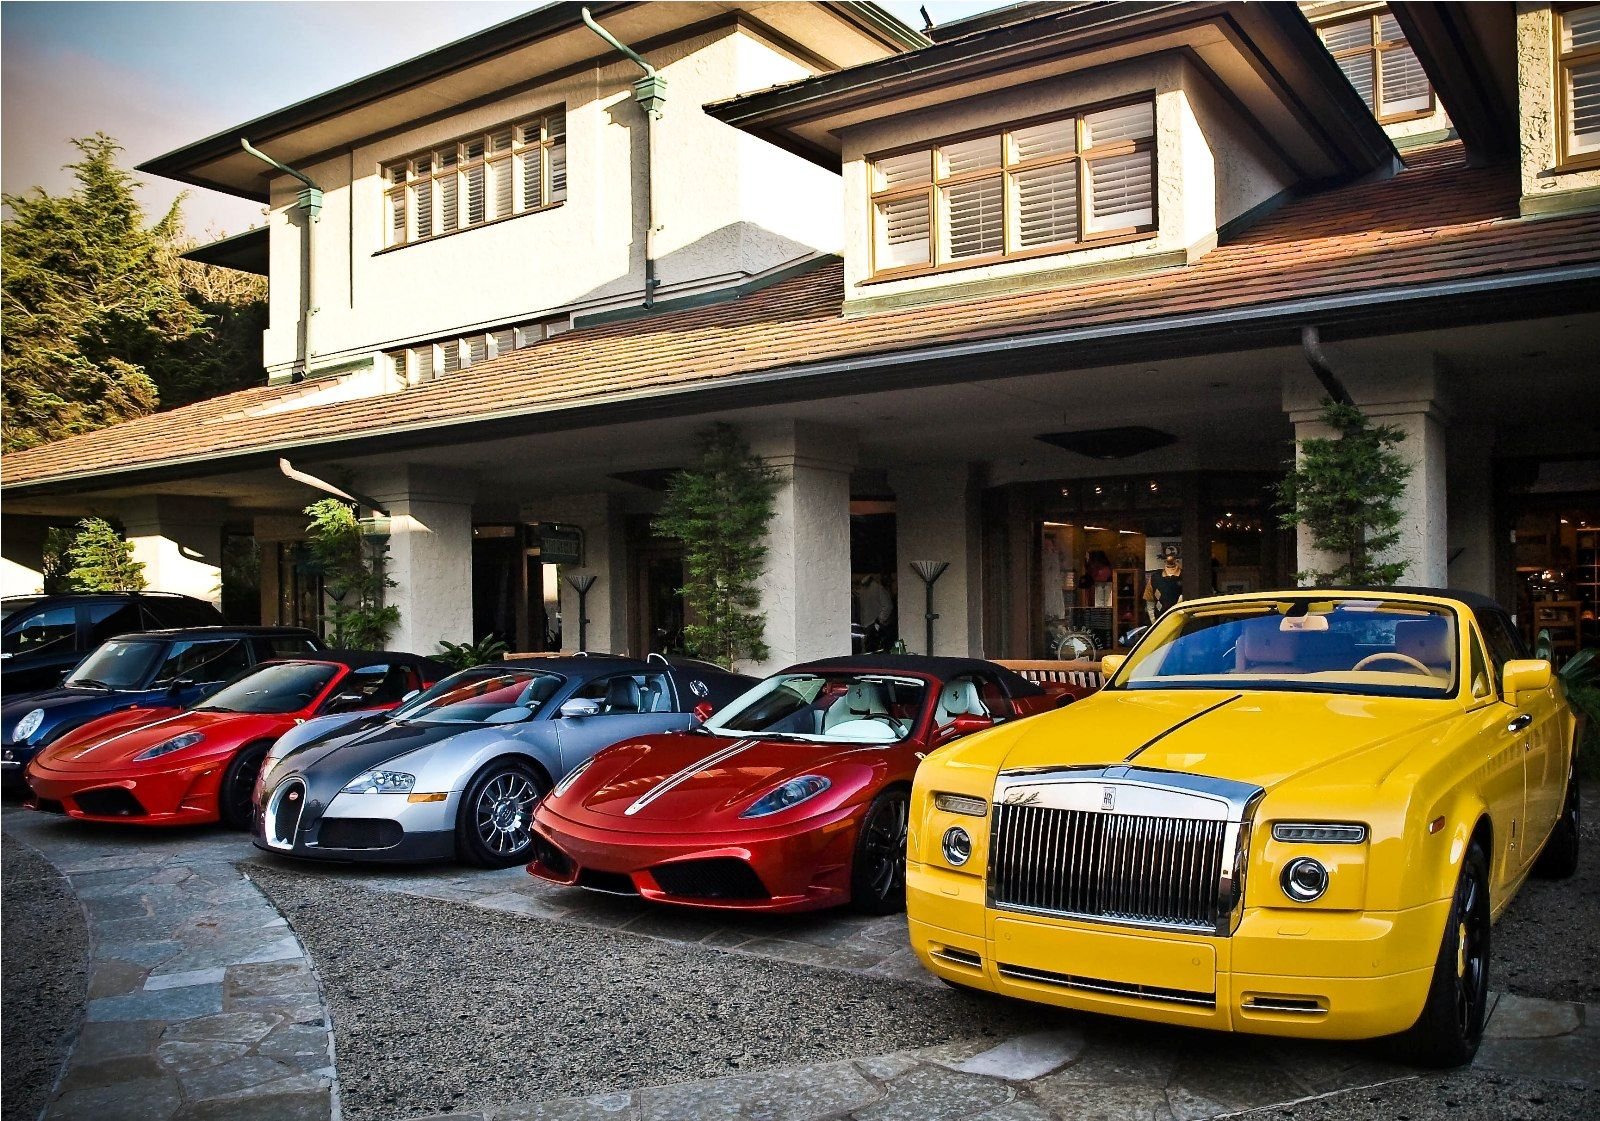 Luxury автомобили. Дорогие машины. Роскошные автомобили. Красивый дом с машиной. Много дорогих машин.